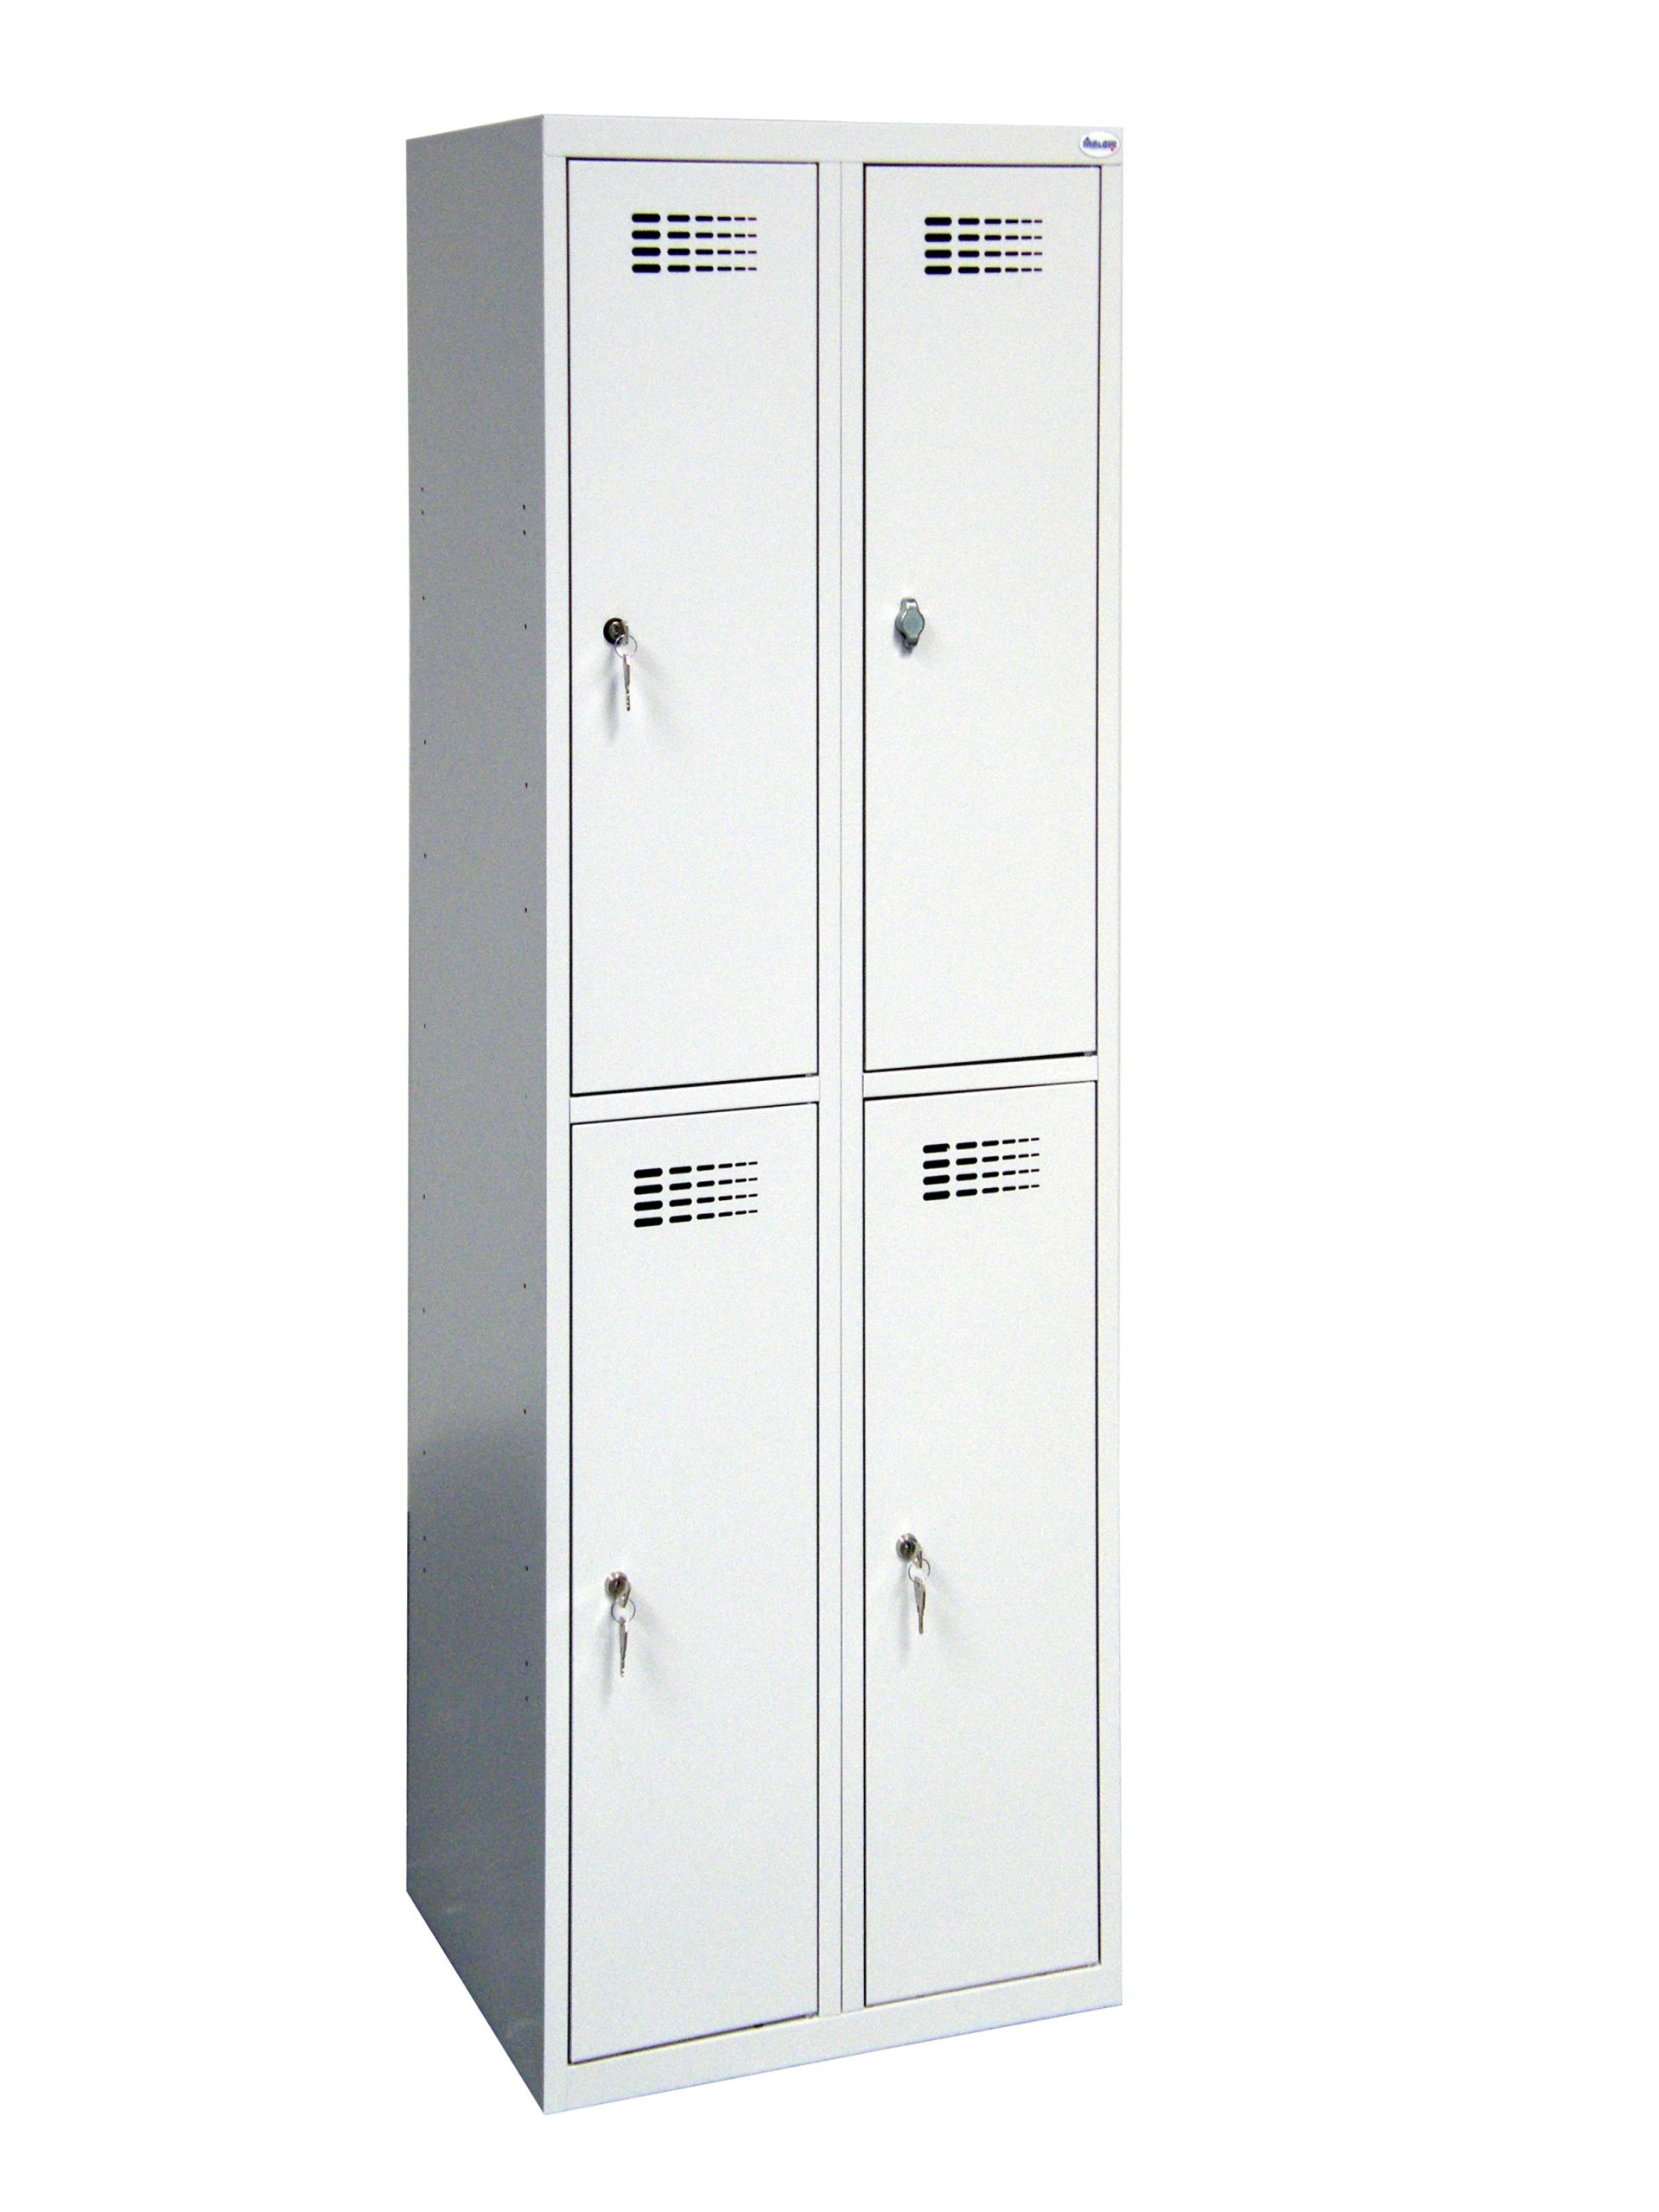 Металлический шкаф со стеклянной дверью ВХШХГ 550 600 270 ip56